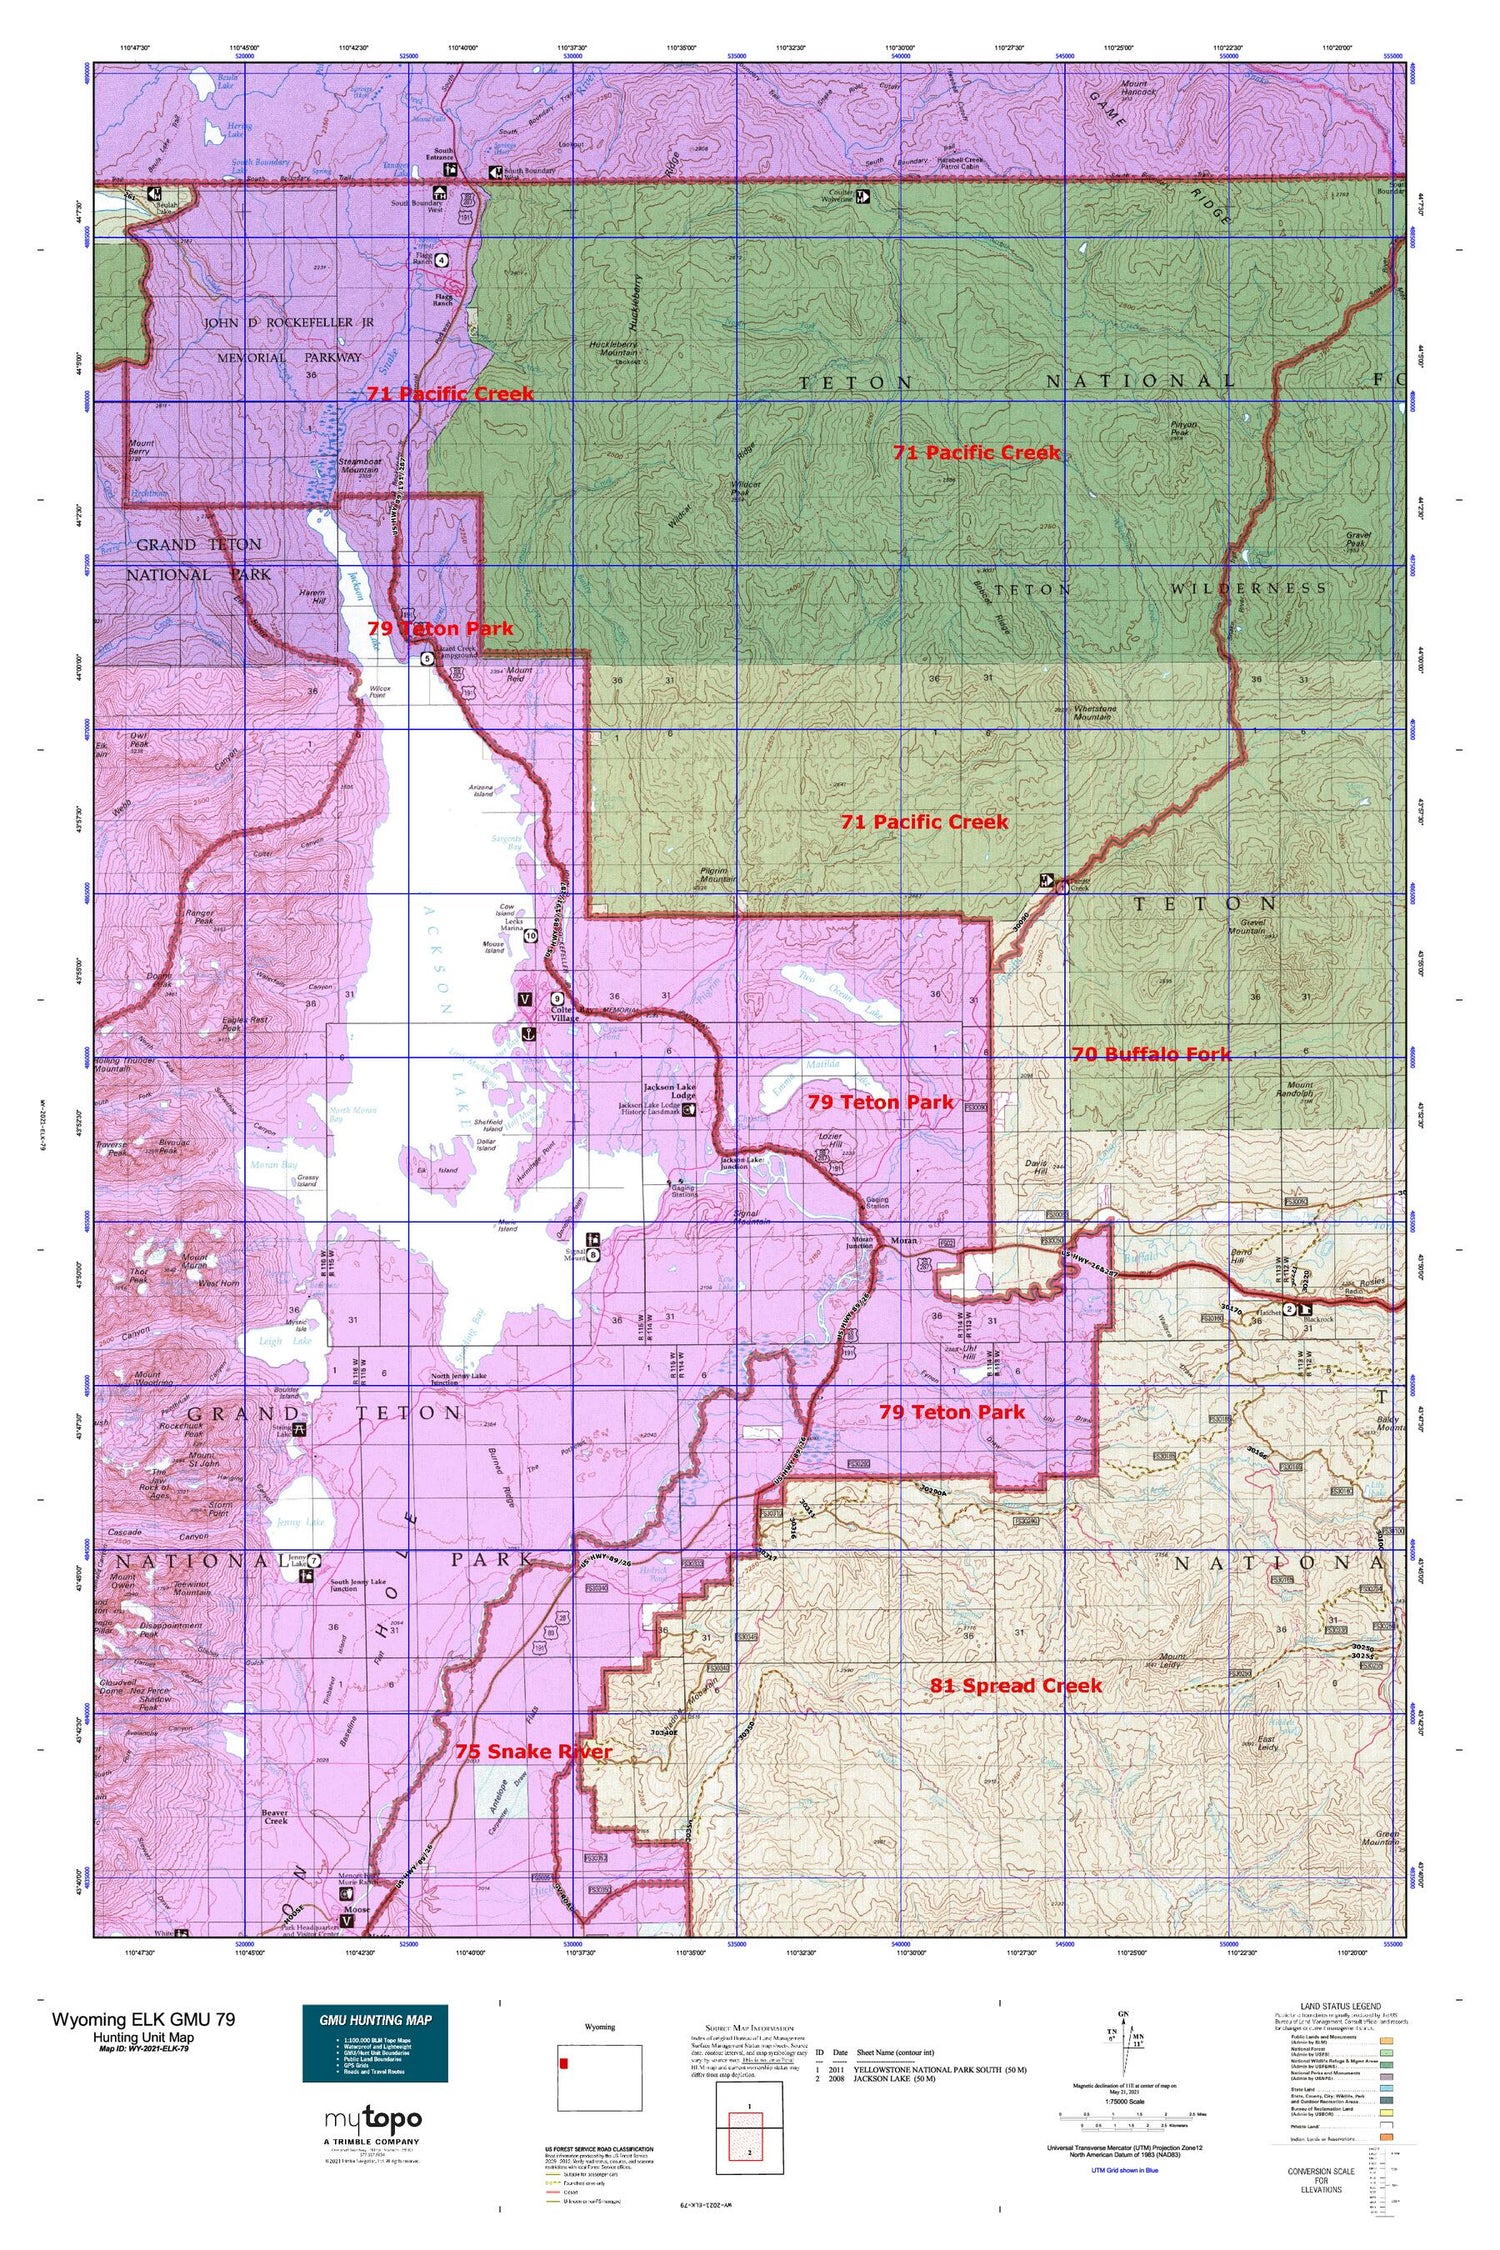 Wyoming Elk GMU 79 Map Image